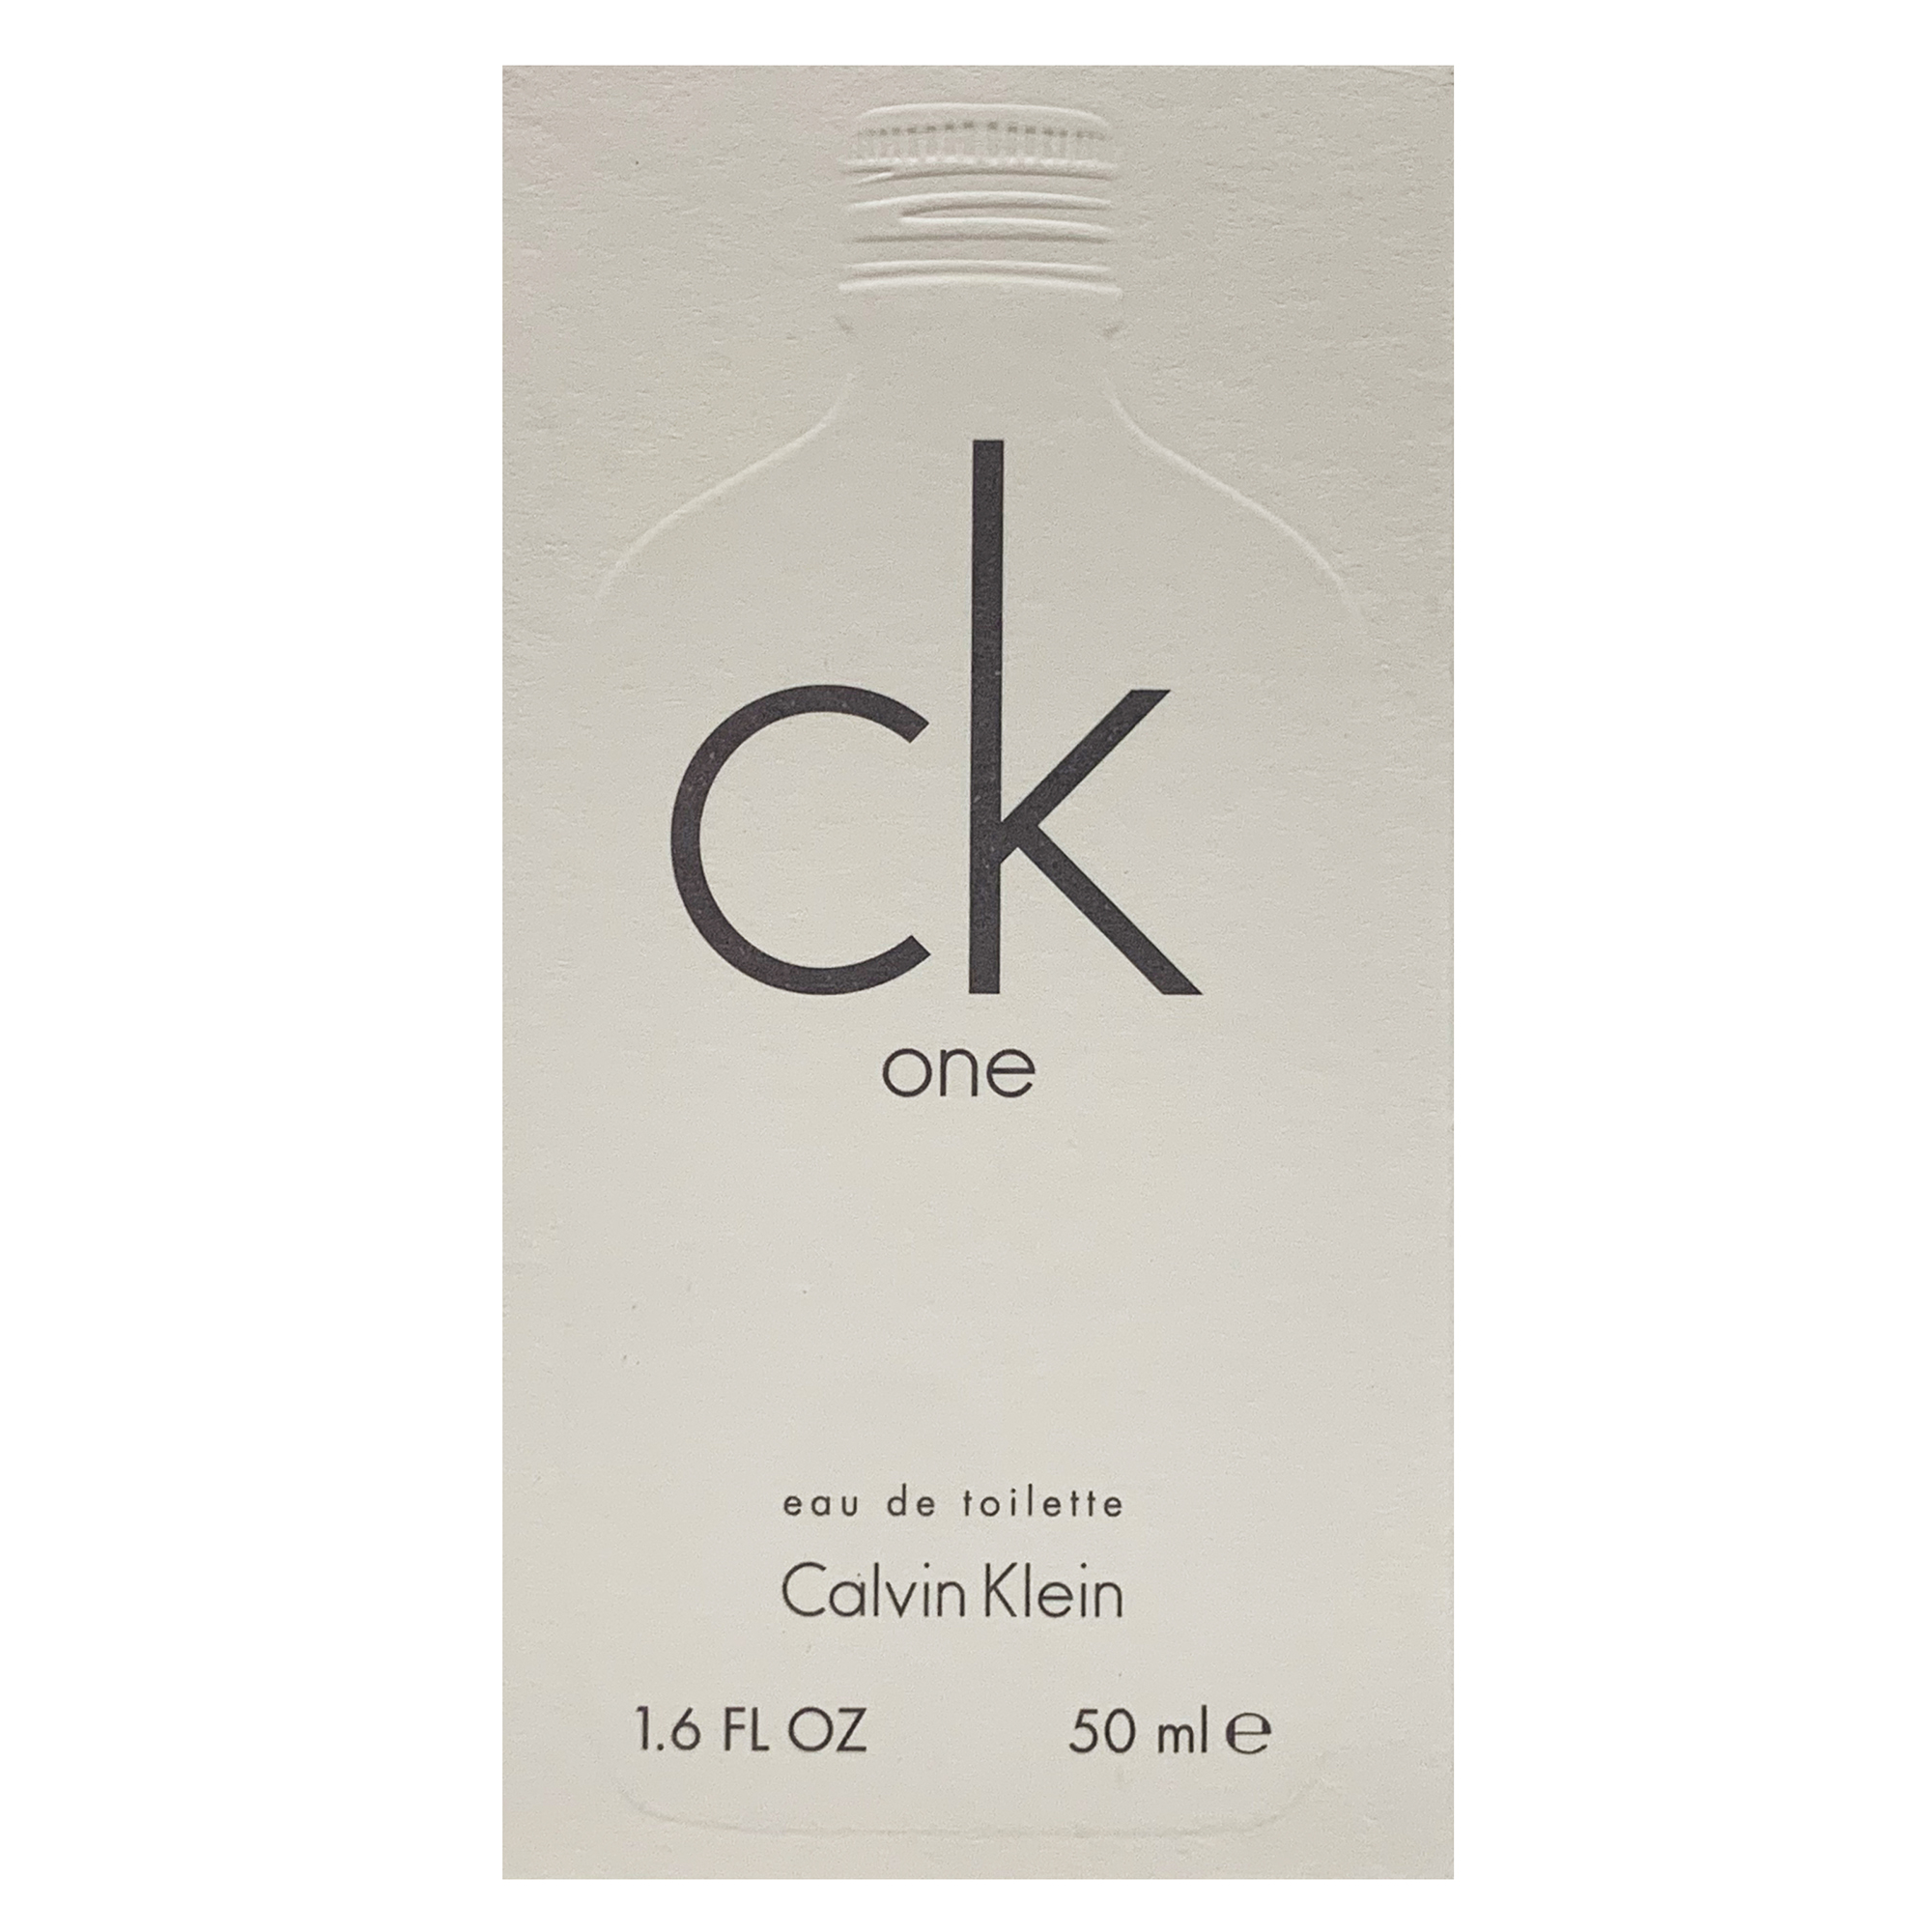 Calvin Klein CK One Eau de Toilette, Unisex Perfume, 1.6 oz - image 3 of 5